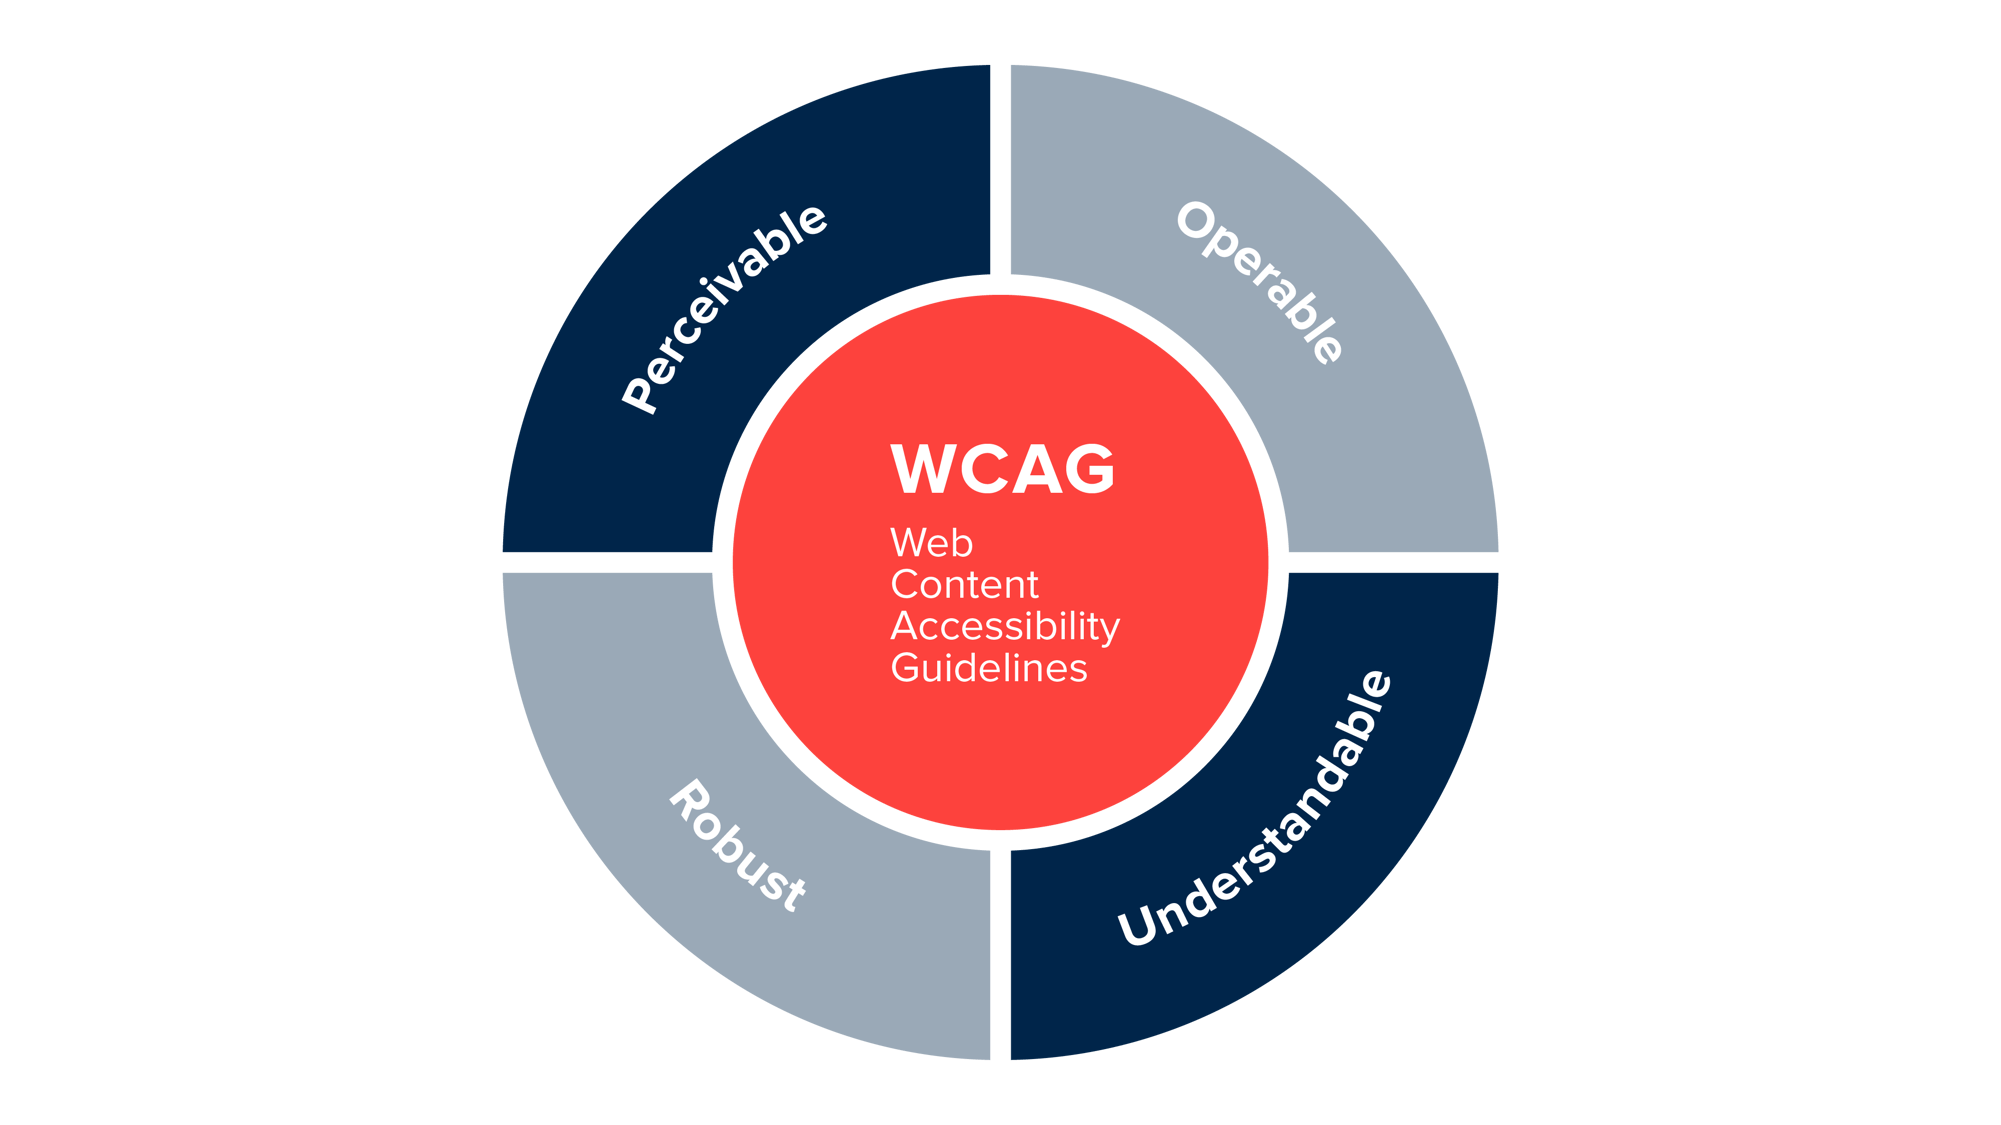 WCAG acronym